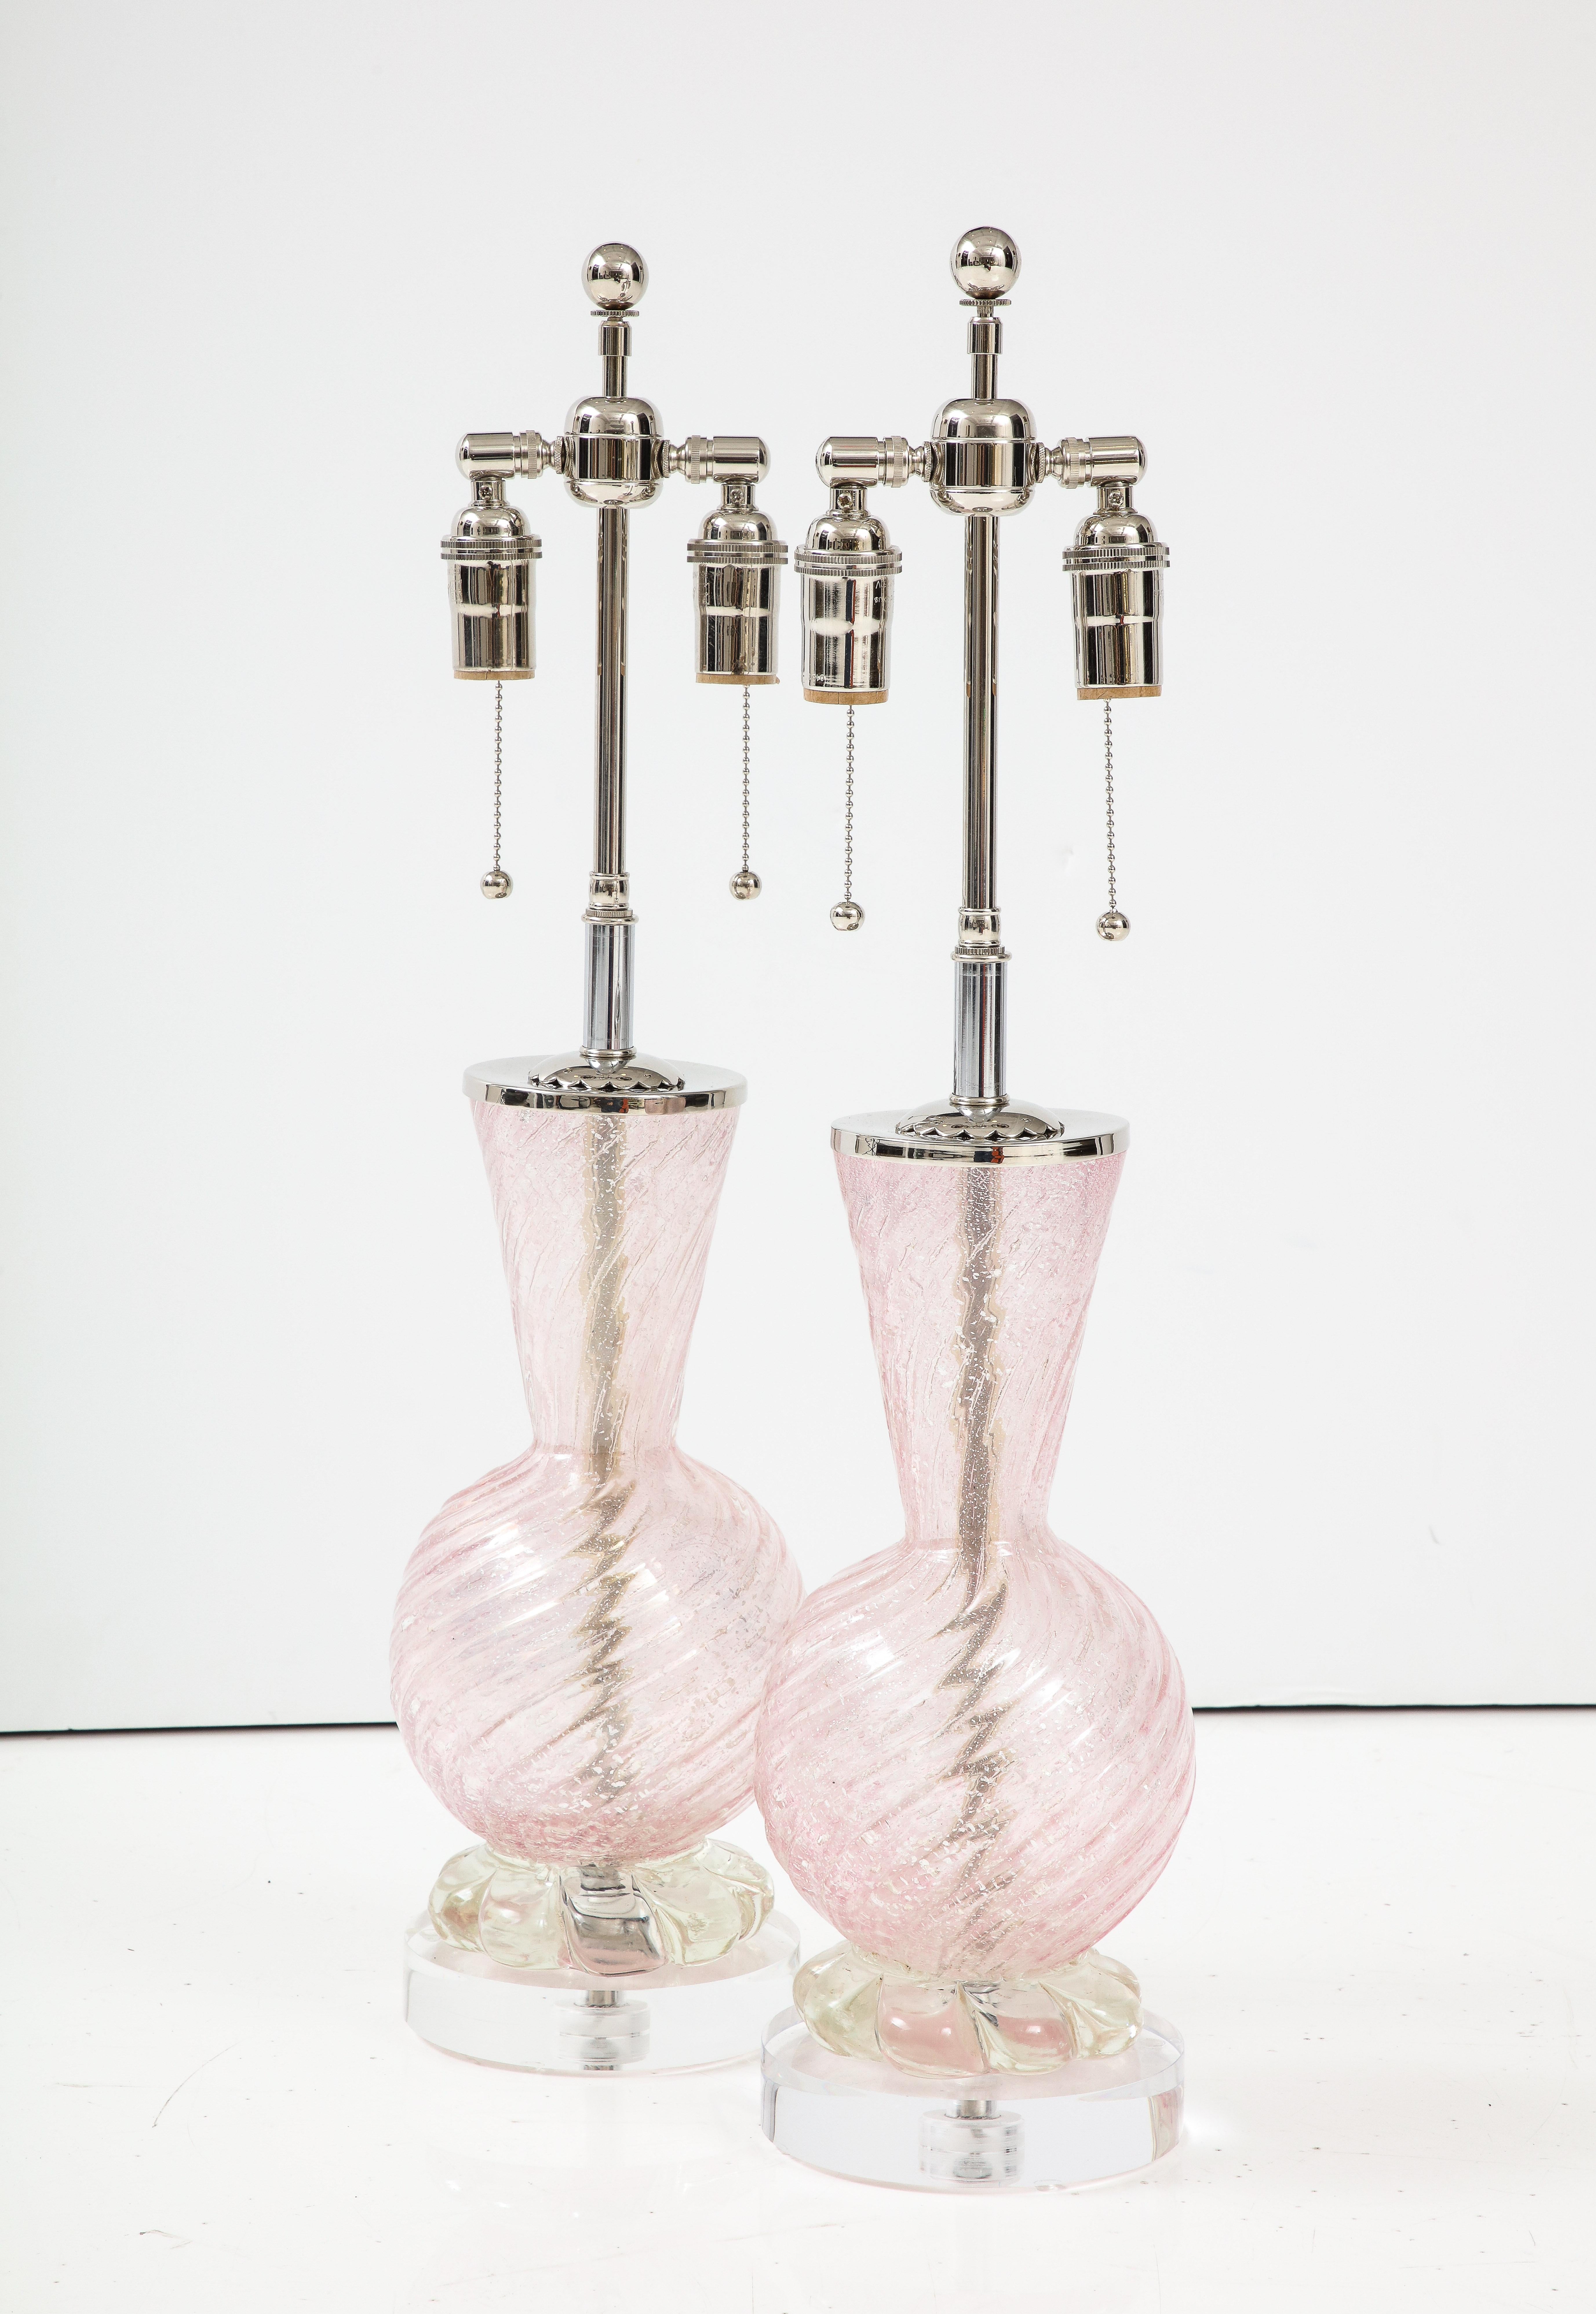 Zwei Lampen aus blassrosa Murano-Glas mit Silberstaubeinschlüssen.
Die Lampen sitzen auf dicken Sockeln aus Lucit und wurden neu verkabelt mit verstellbaren
Polierte Nickel-Doppelbündel, die Glühbirnen in Standardgröße aufnehmen.
Die Höhe bis zur